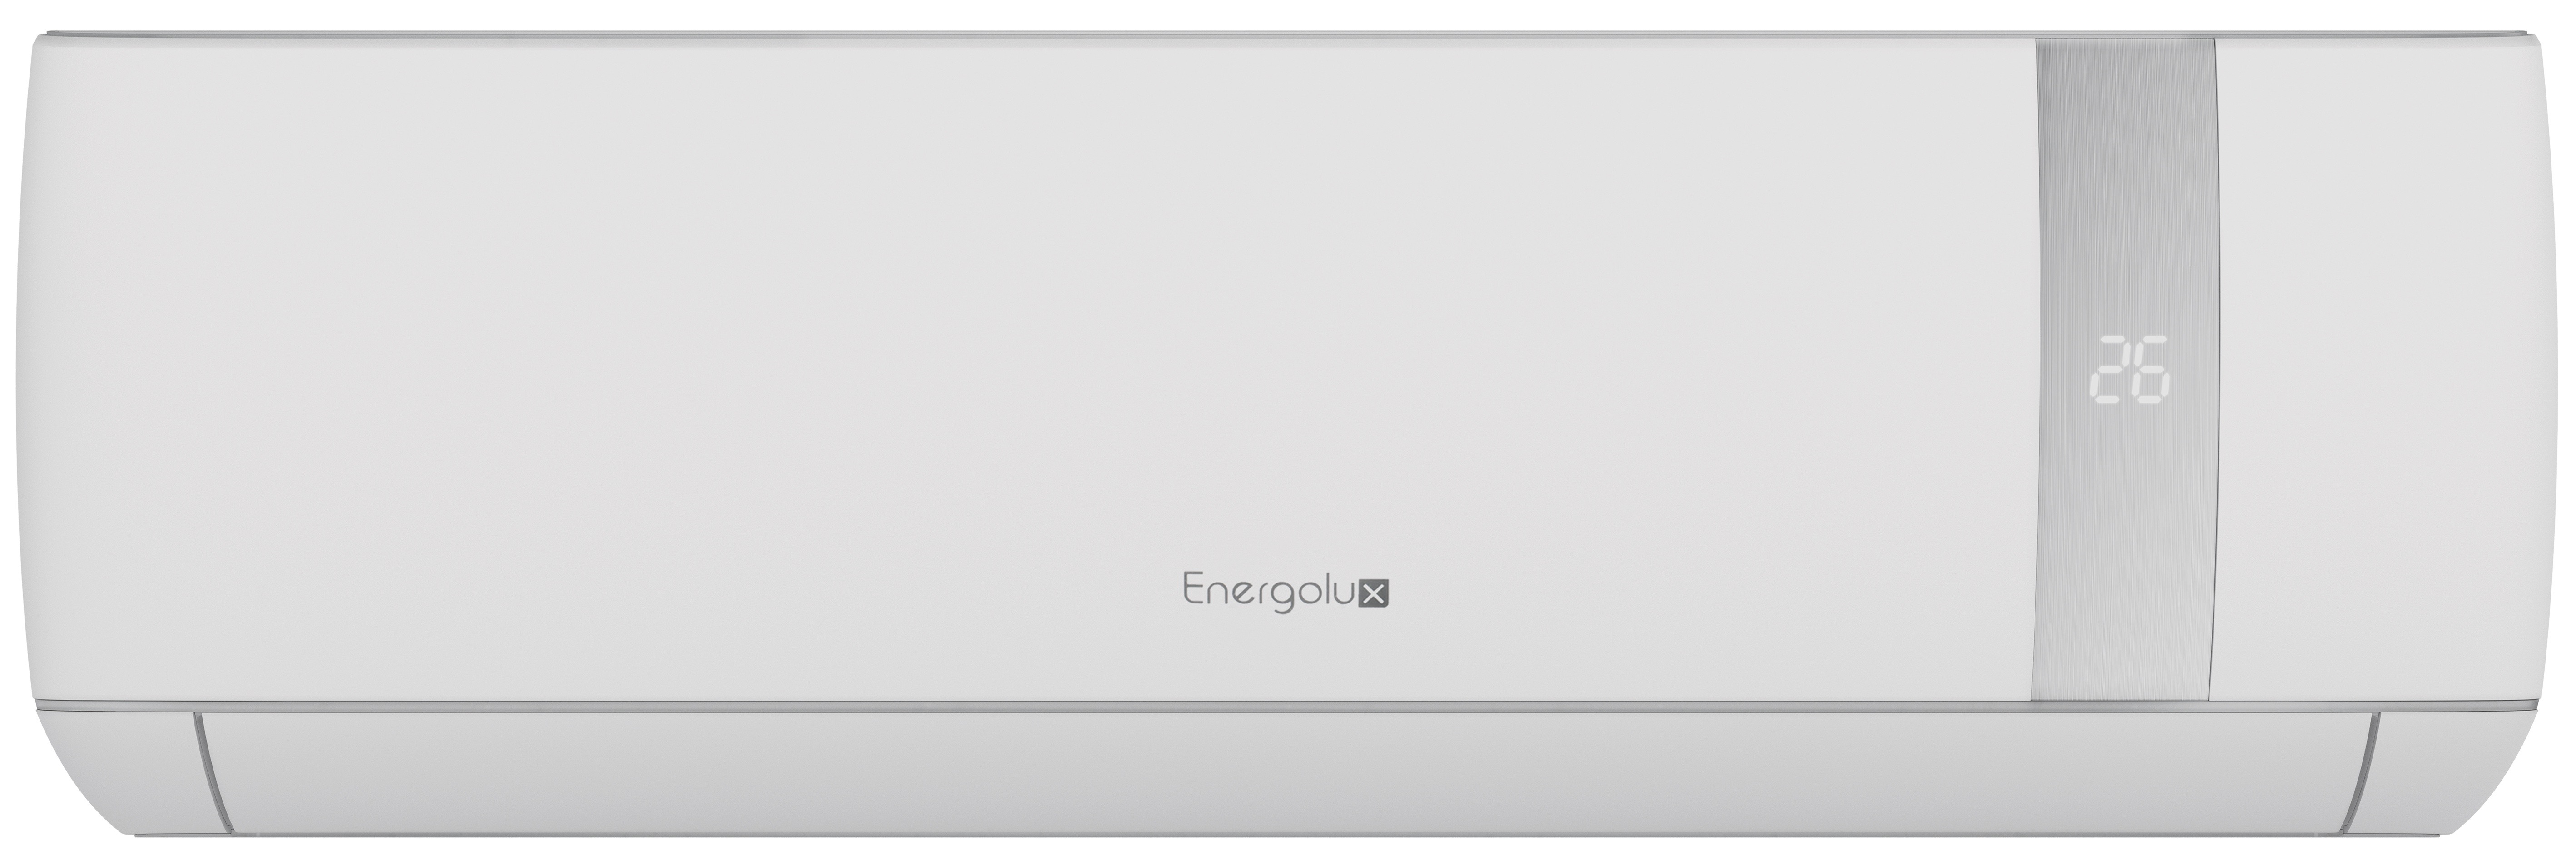 1. Energolux сплит-система настенный SAS09BN1-AI (серия Bern)